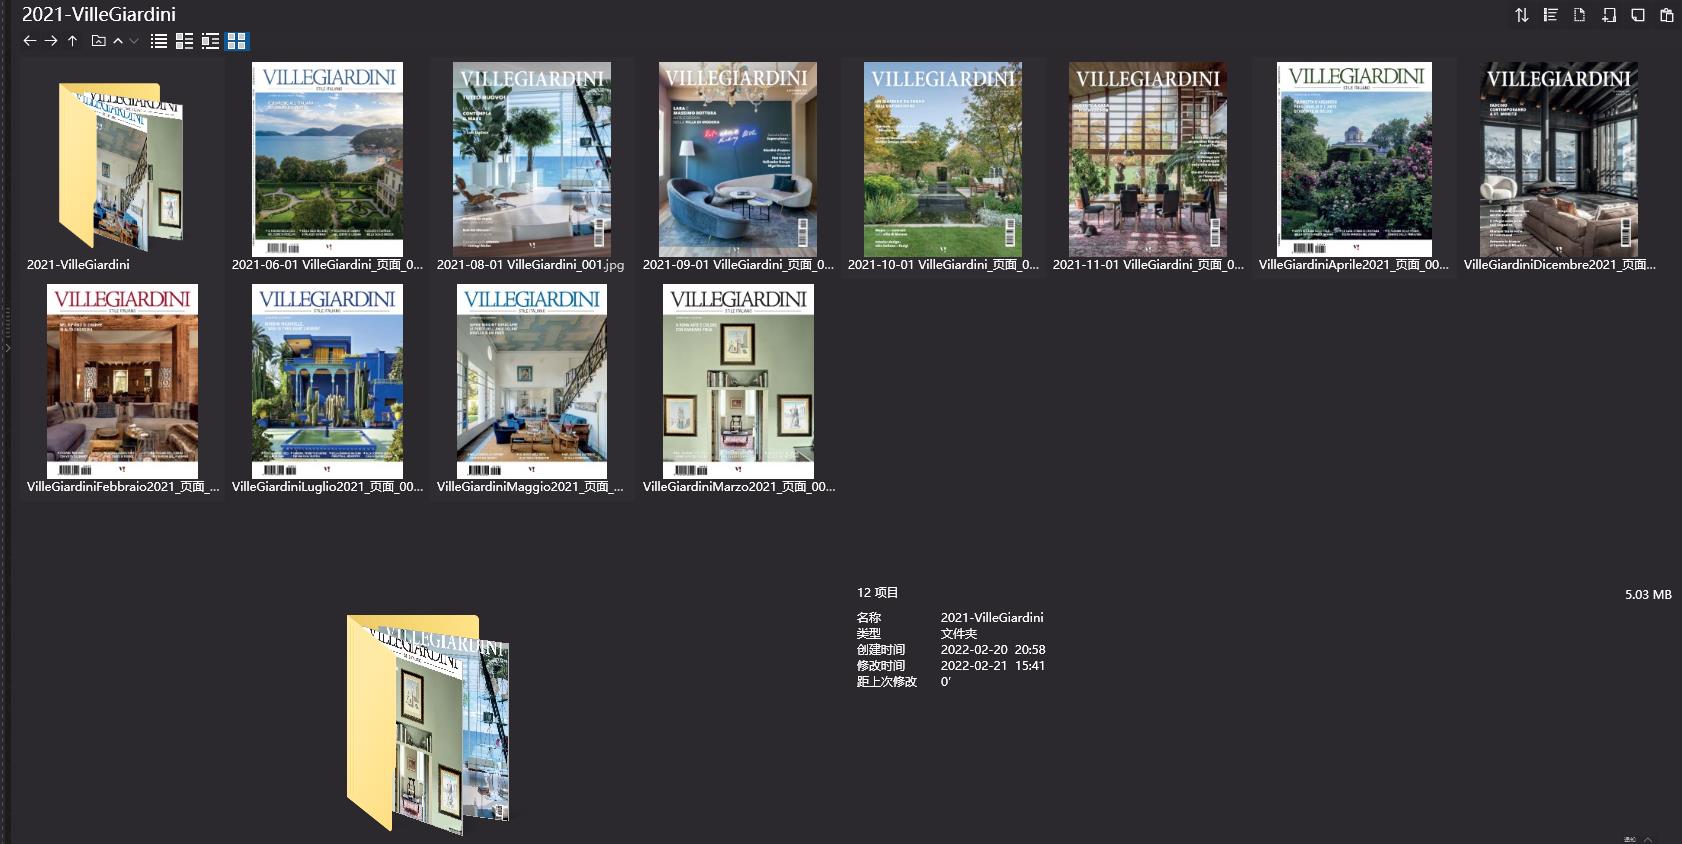 室内设计杂志VilleGiardini,别墅设计杂志,室内设计电子杂志,杂志下载,VilleGiardini杂志合集